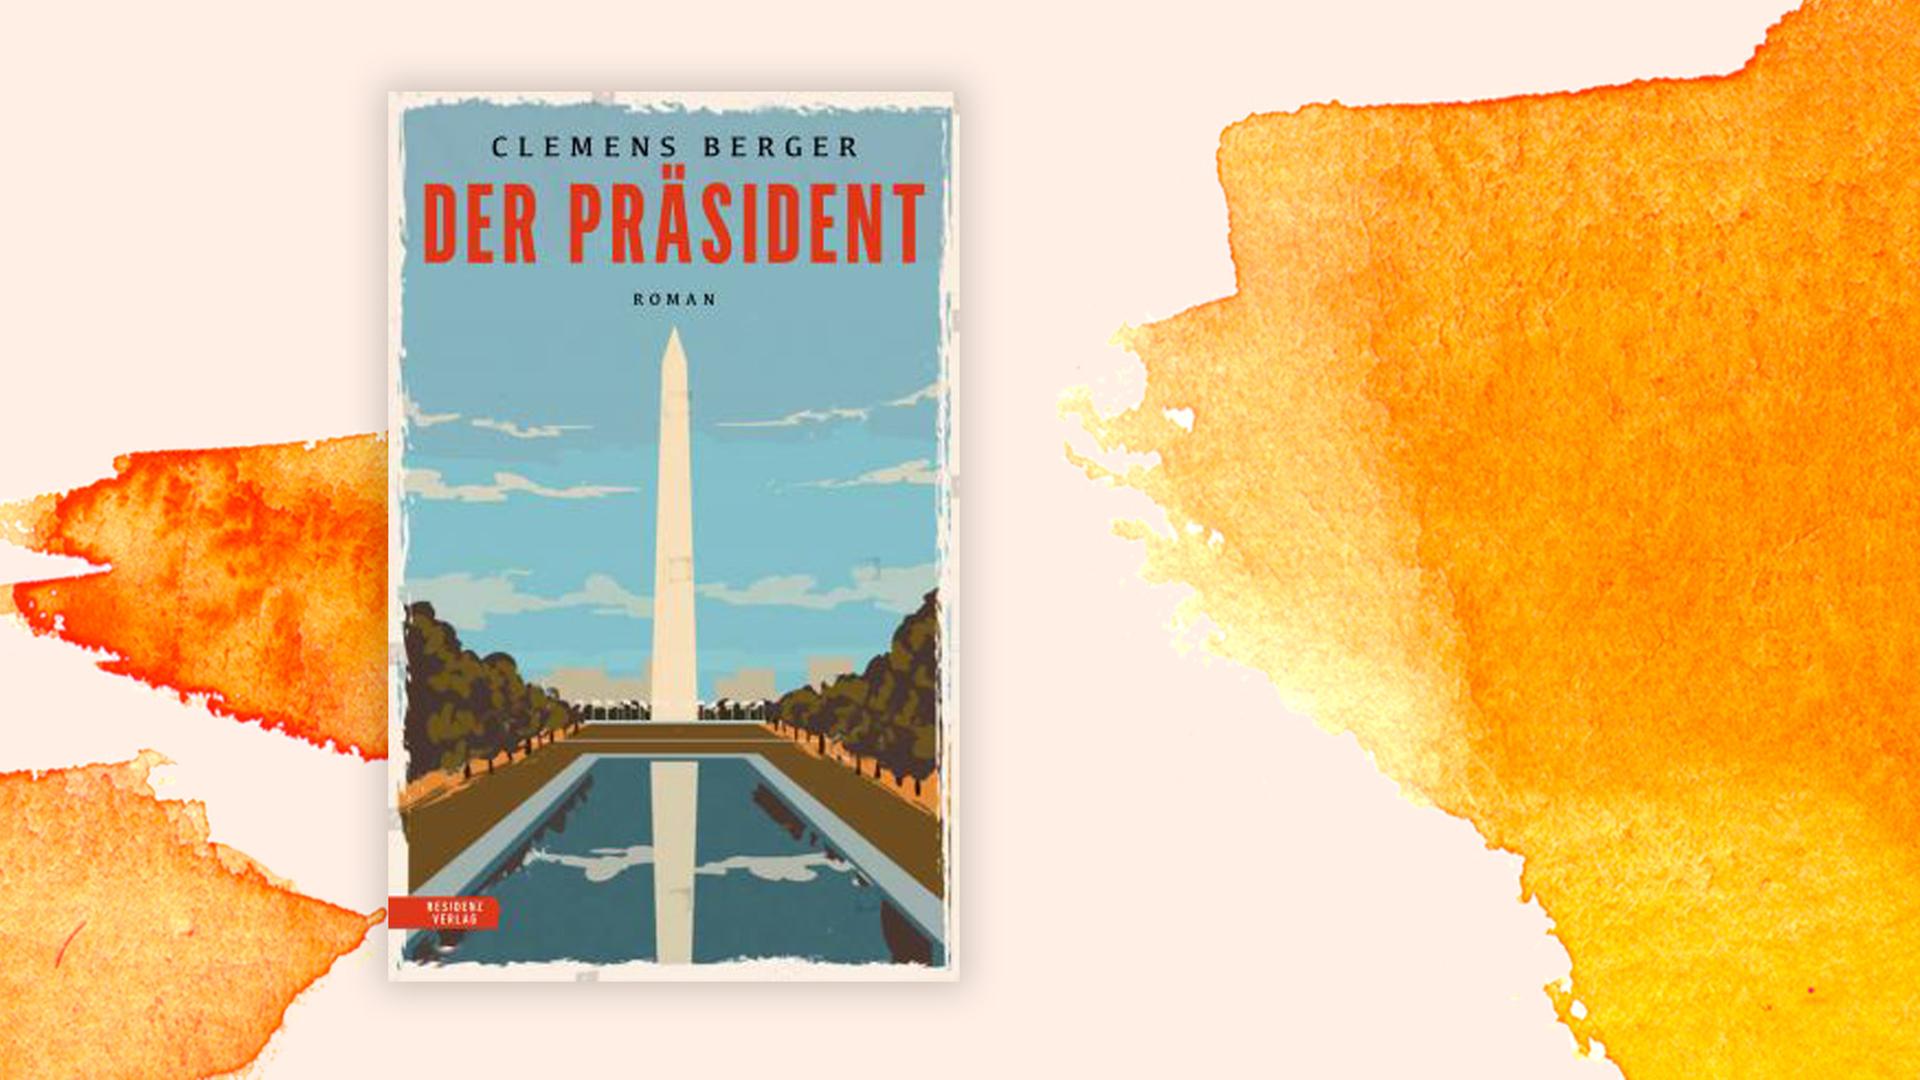 Das Cover zeigt das Washington Memorial  in einer Zeichnung, den riesigen Obelisken zu Ehren des ersten US-Präsidenten George Washington.